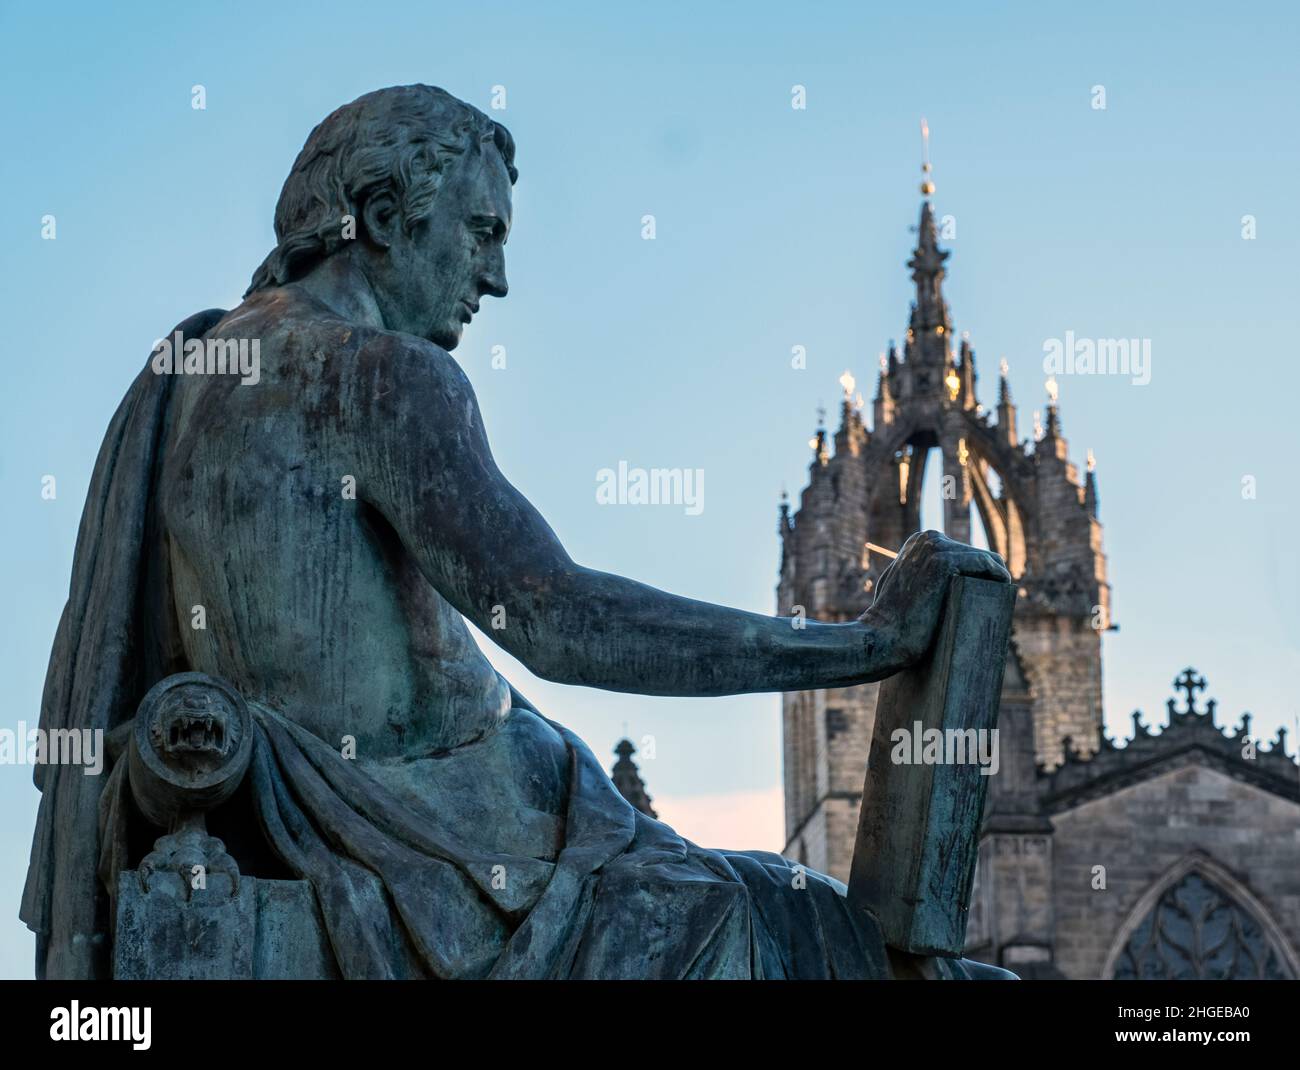 Statue de David Hume située sur le Royal Mile, Édimbourg.Hume était un philosophe écossais des Lumières, un historien, un économiste, un bibliothécaire et un essayiste. Banque D'Images